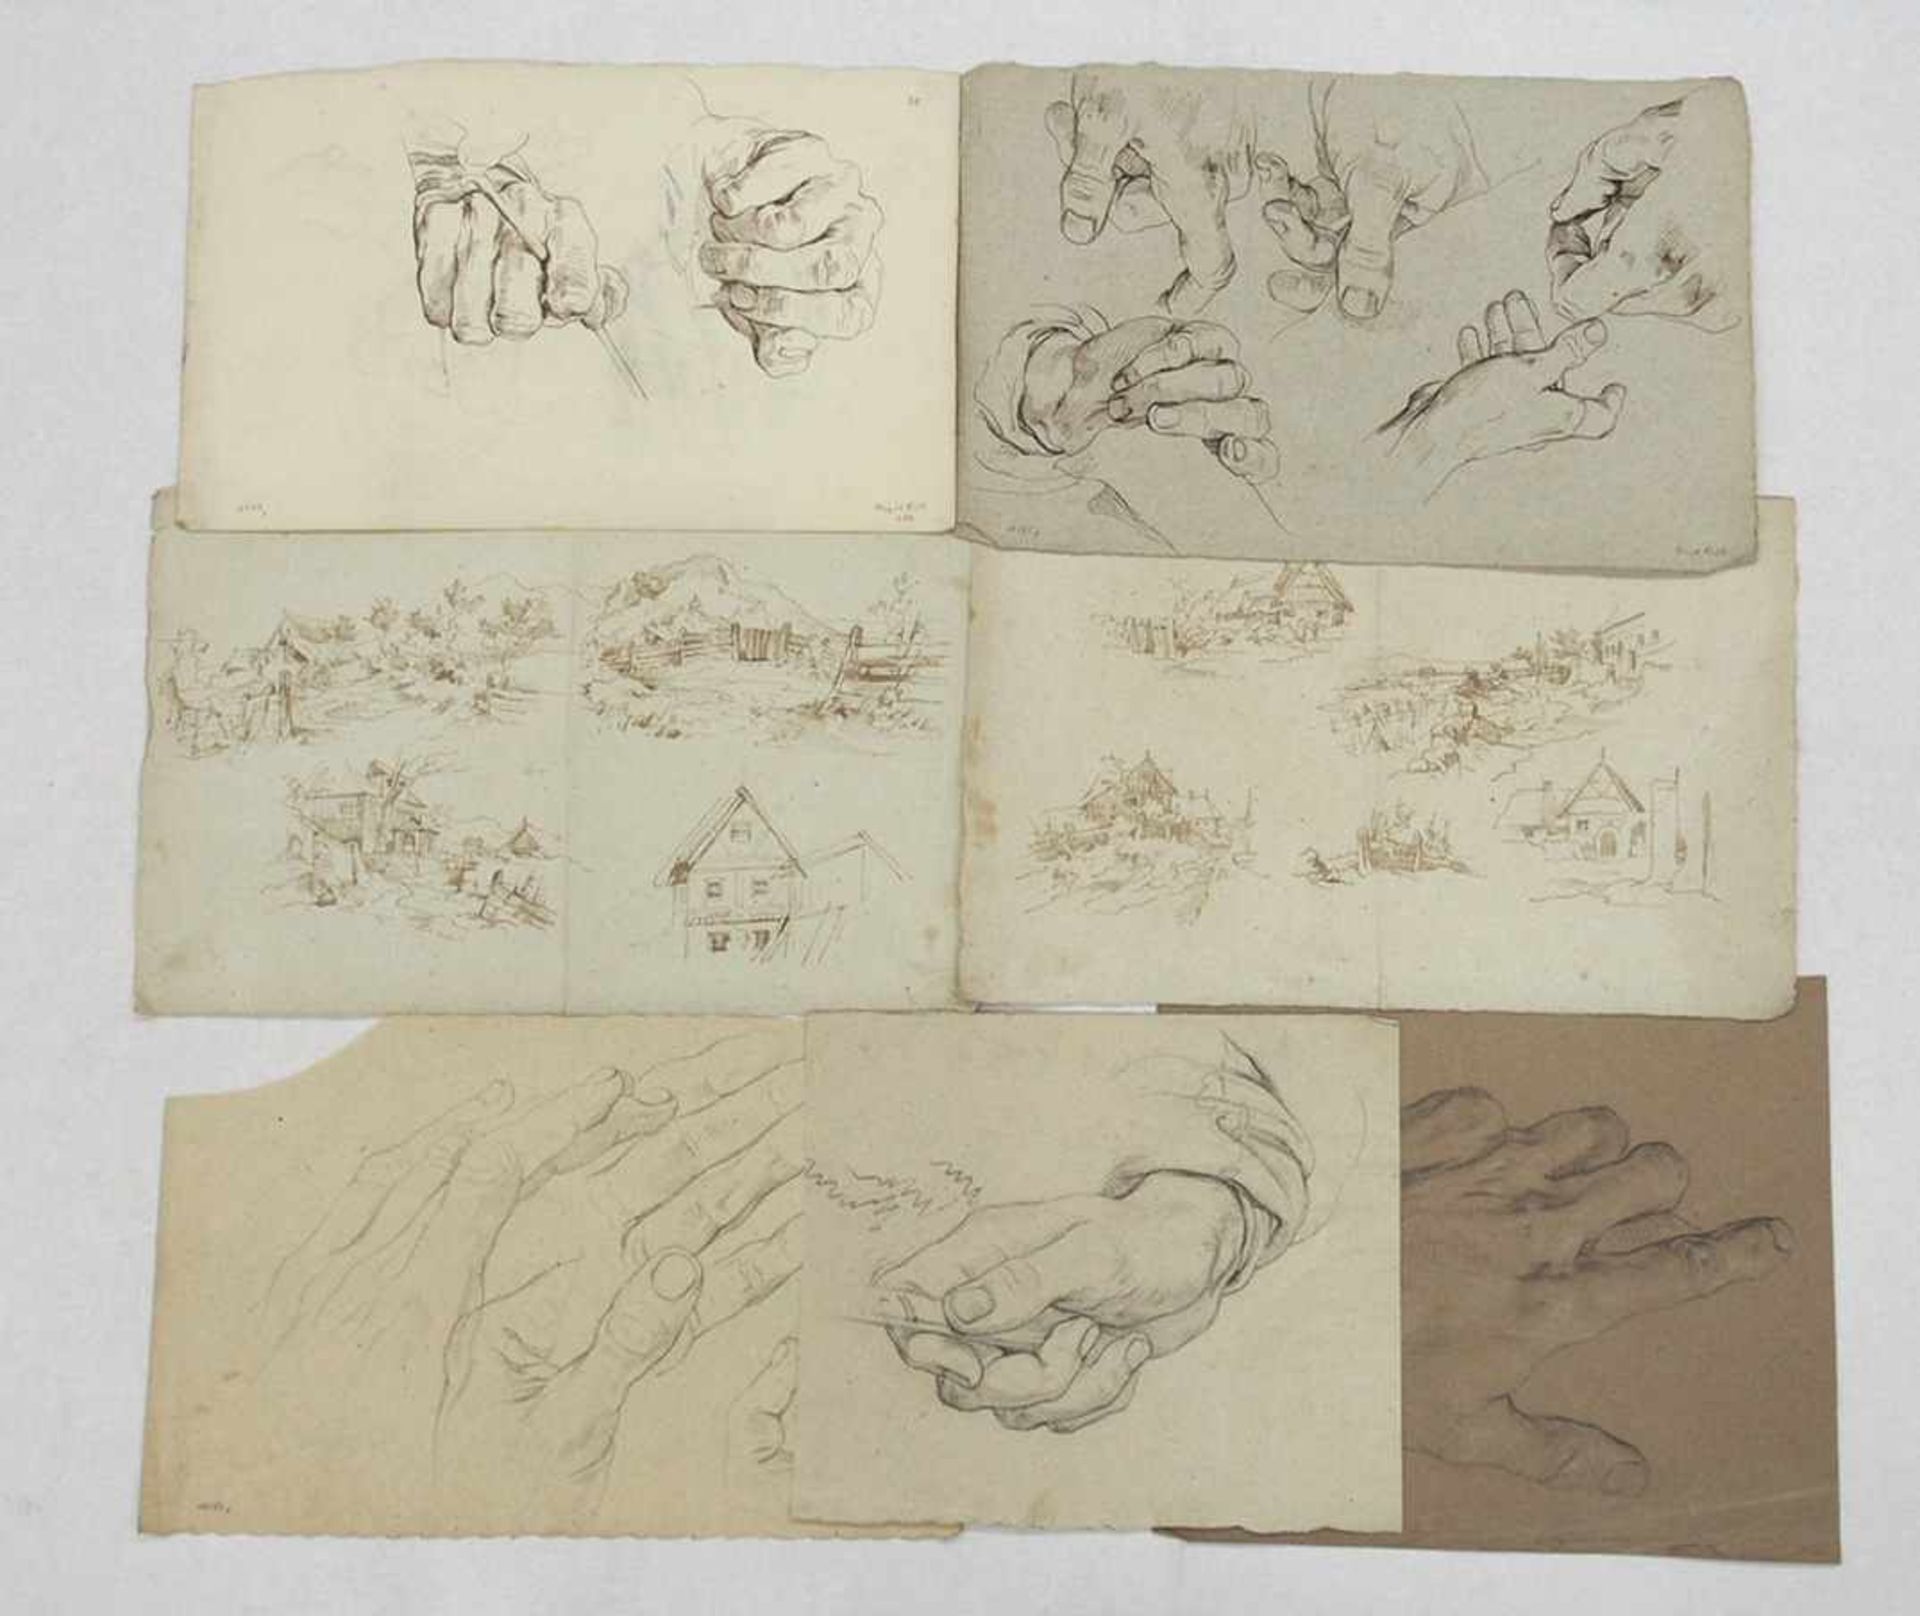 RICHTER, August1801-1873Konvolut HandzeichnungenLandschaften (2x) und Handstudien, Feder, Kreide,